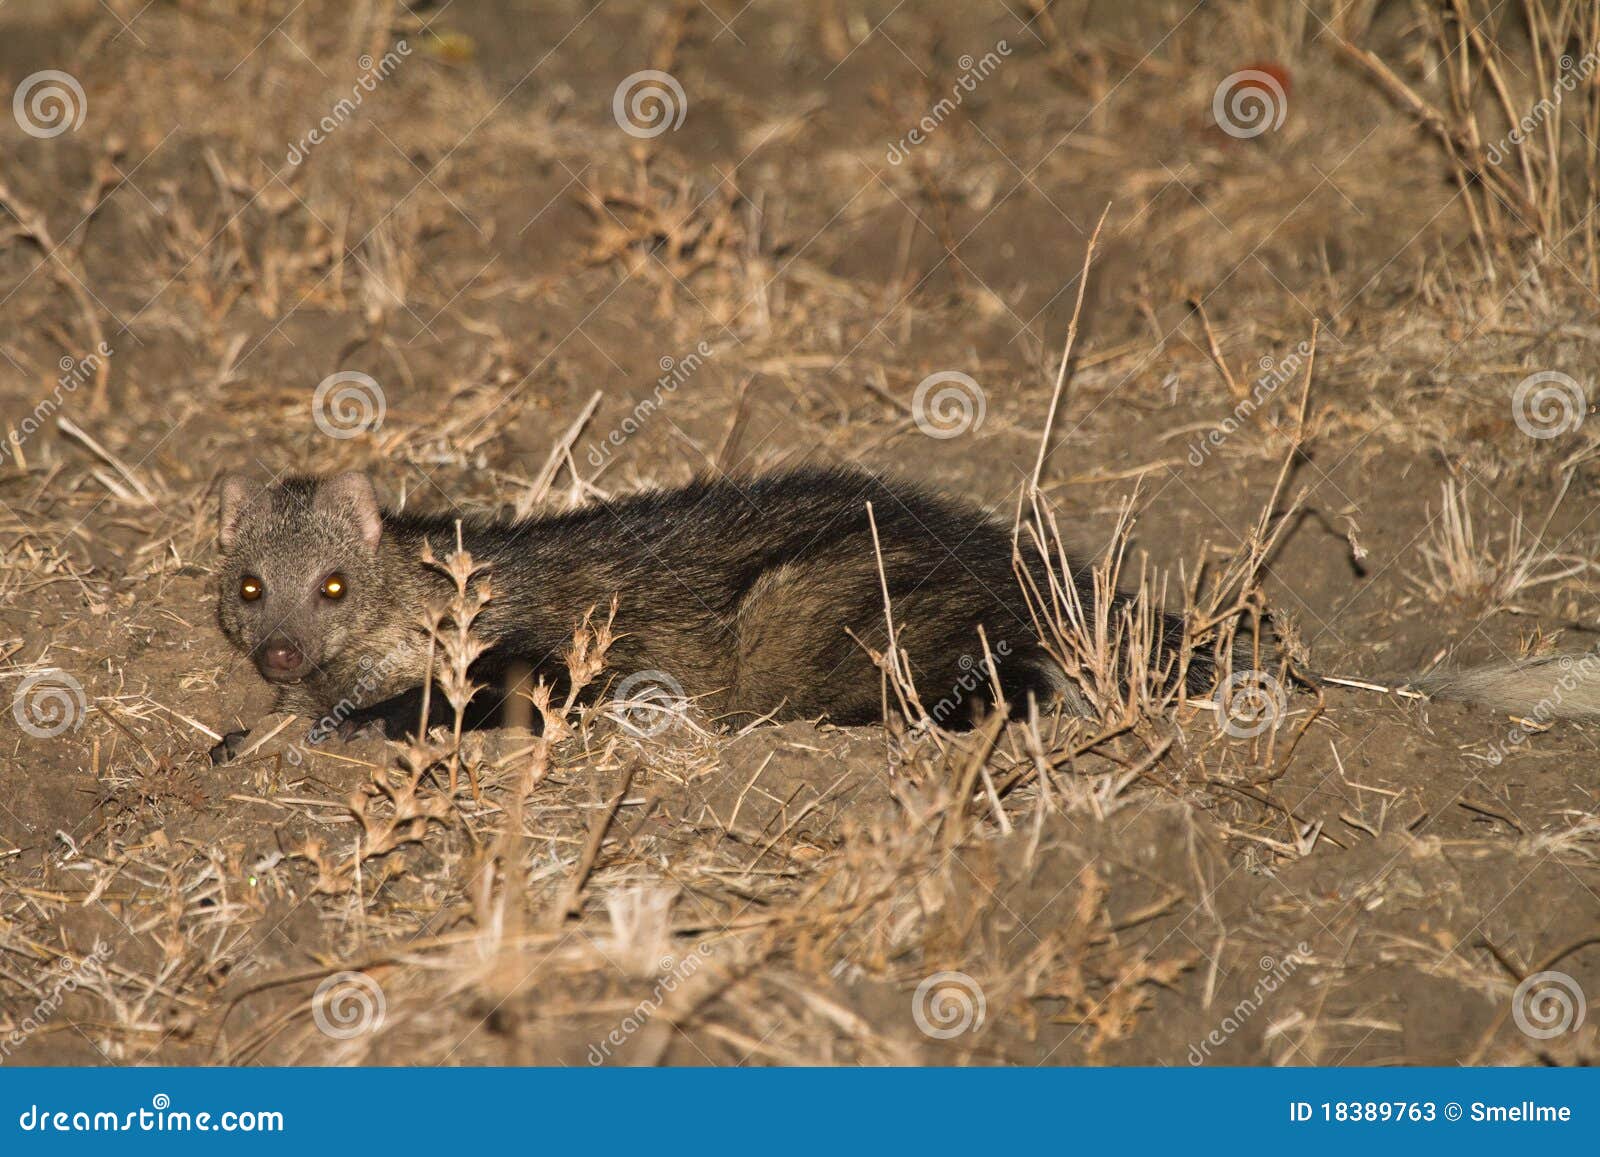 water mongoose